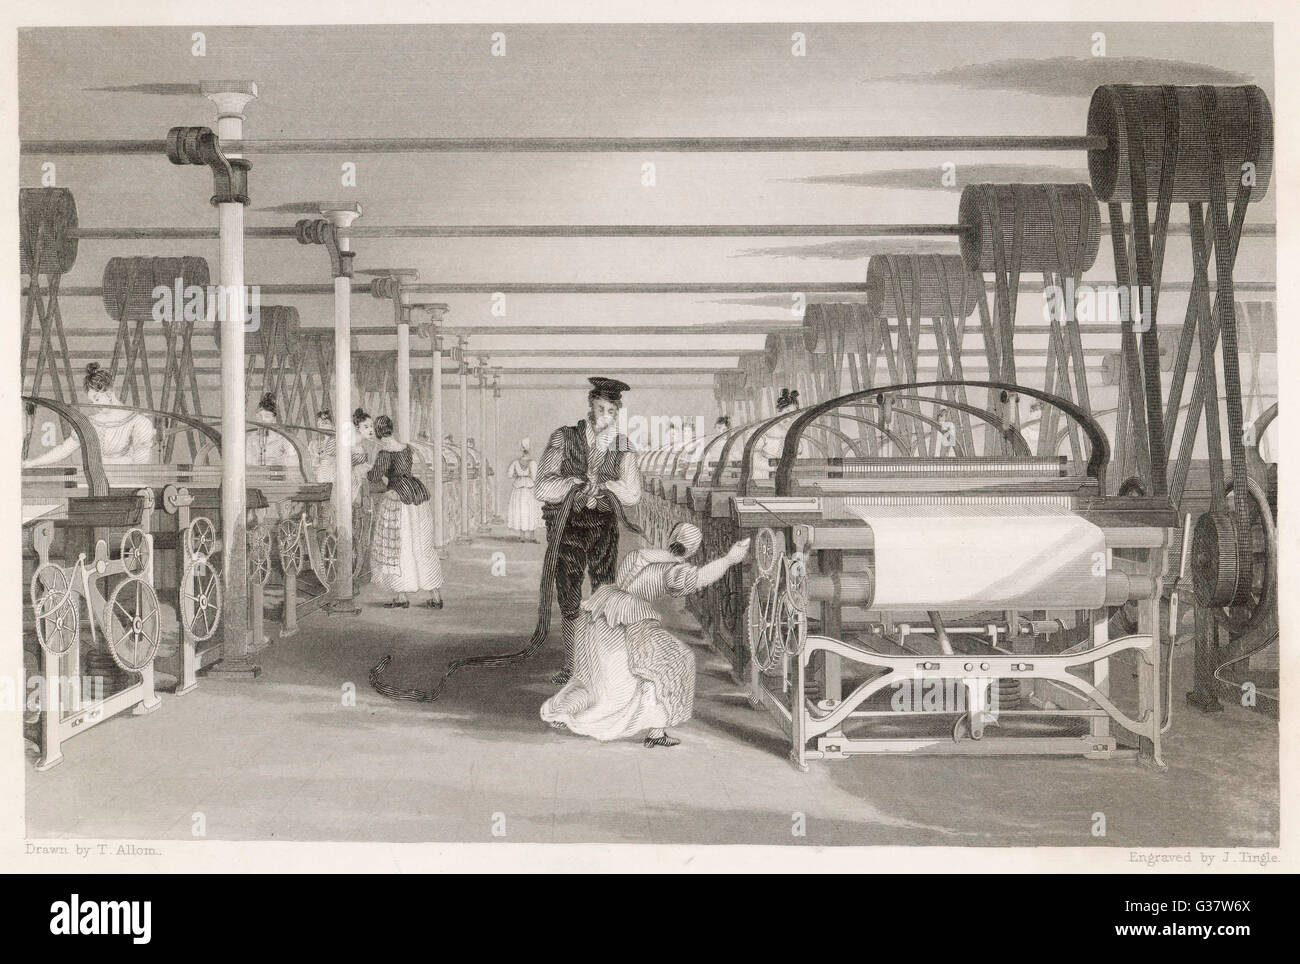 Intérieur de l'usine de coton : power loom weaving. L'homme et la femme ont tendance machine. Date : 1835 Banque D'Images